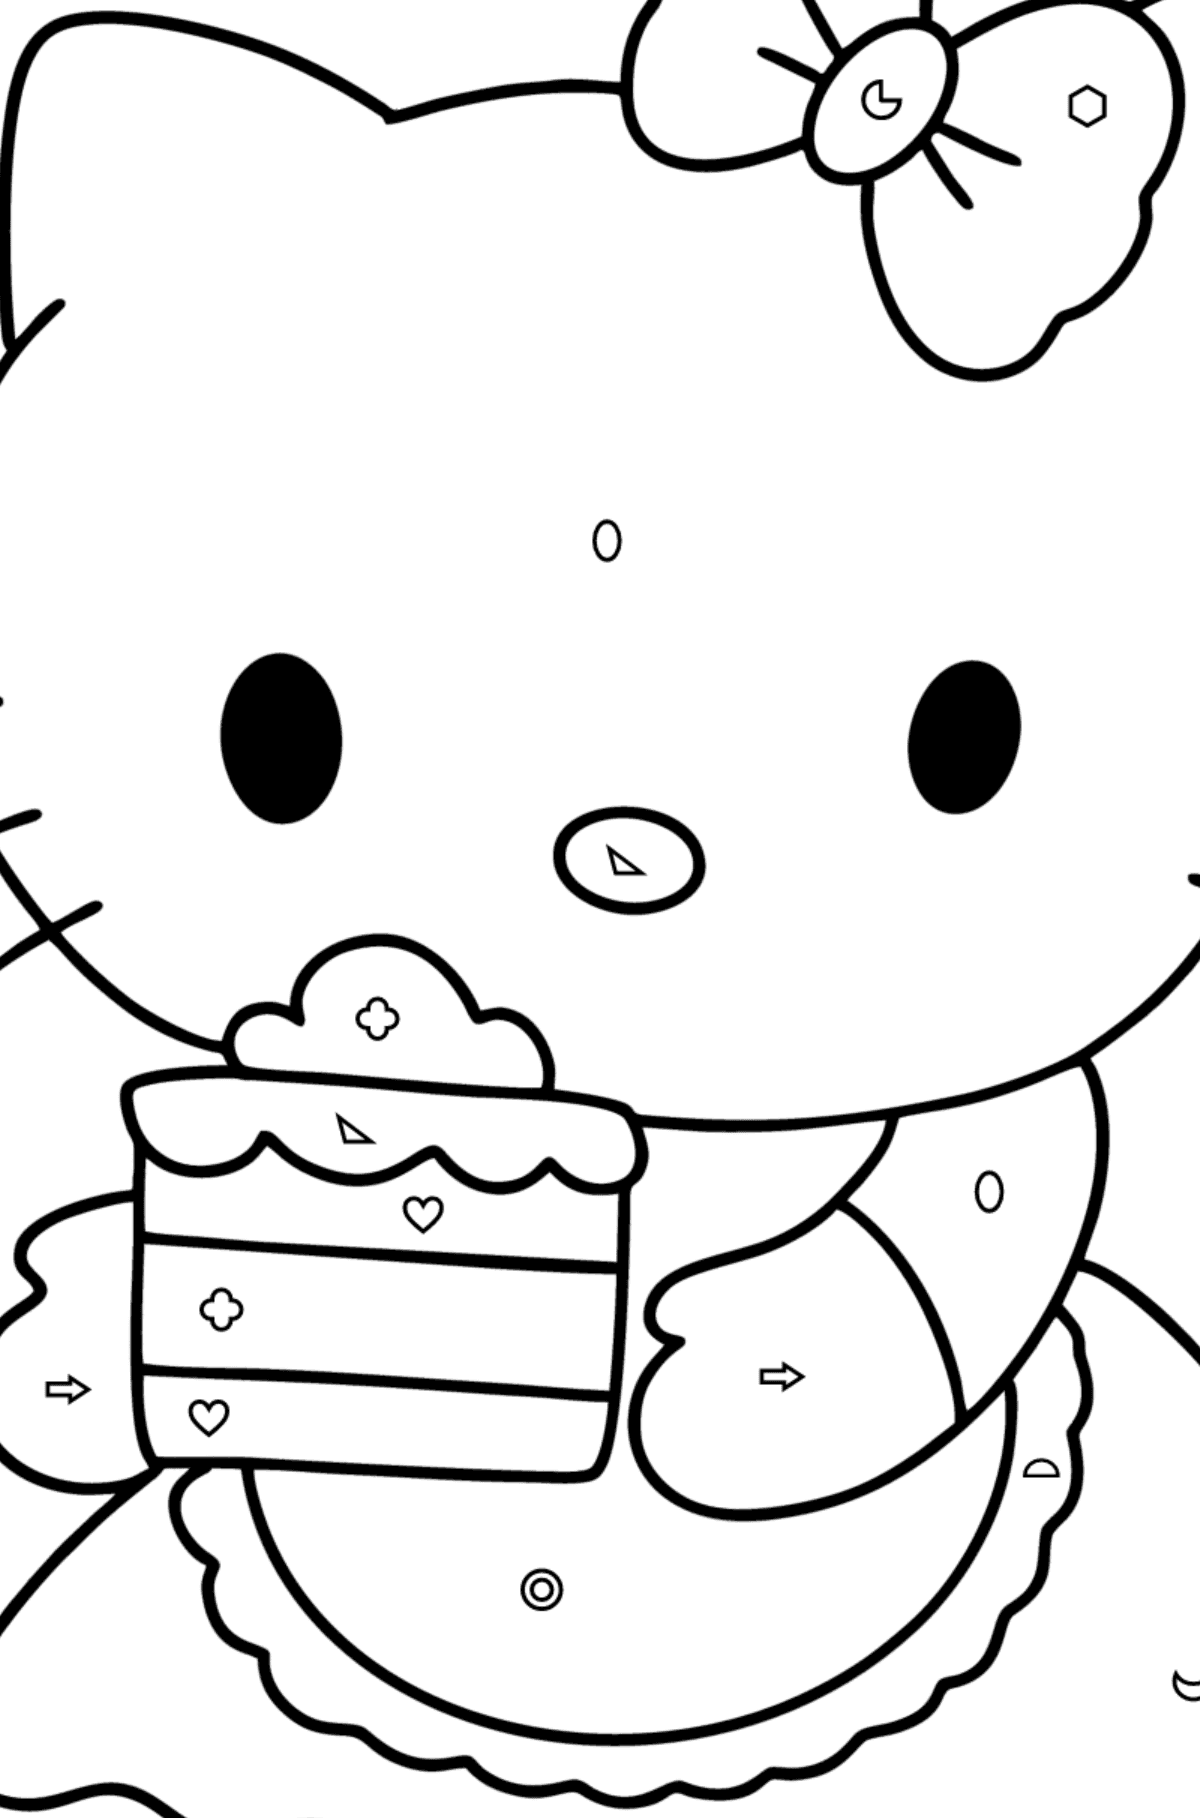 Boyama sayfası Hello Kitty ve pasta - Geometrik Şekillerle Boyama çocuklar için